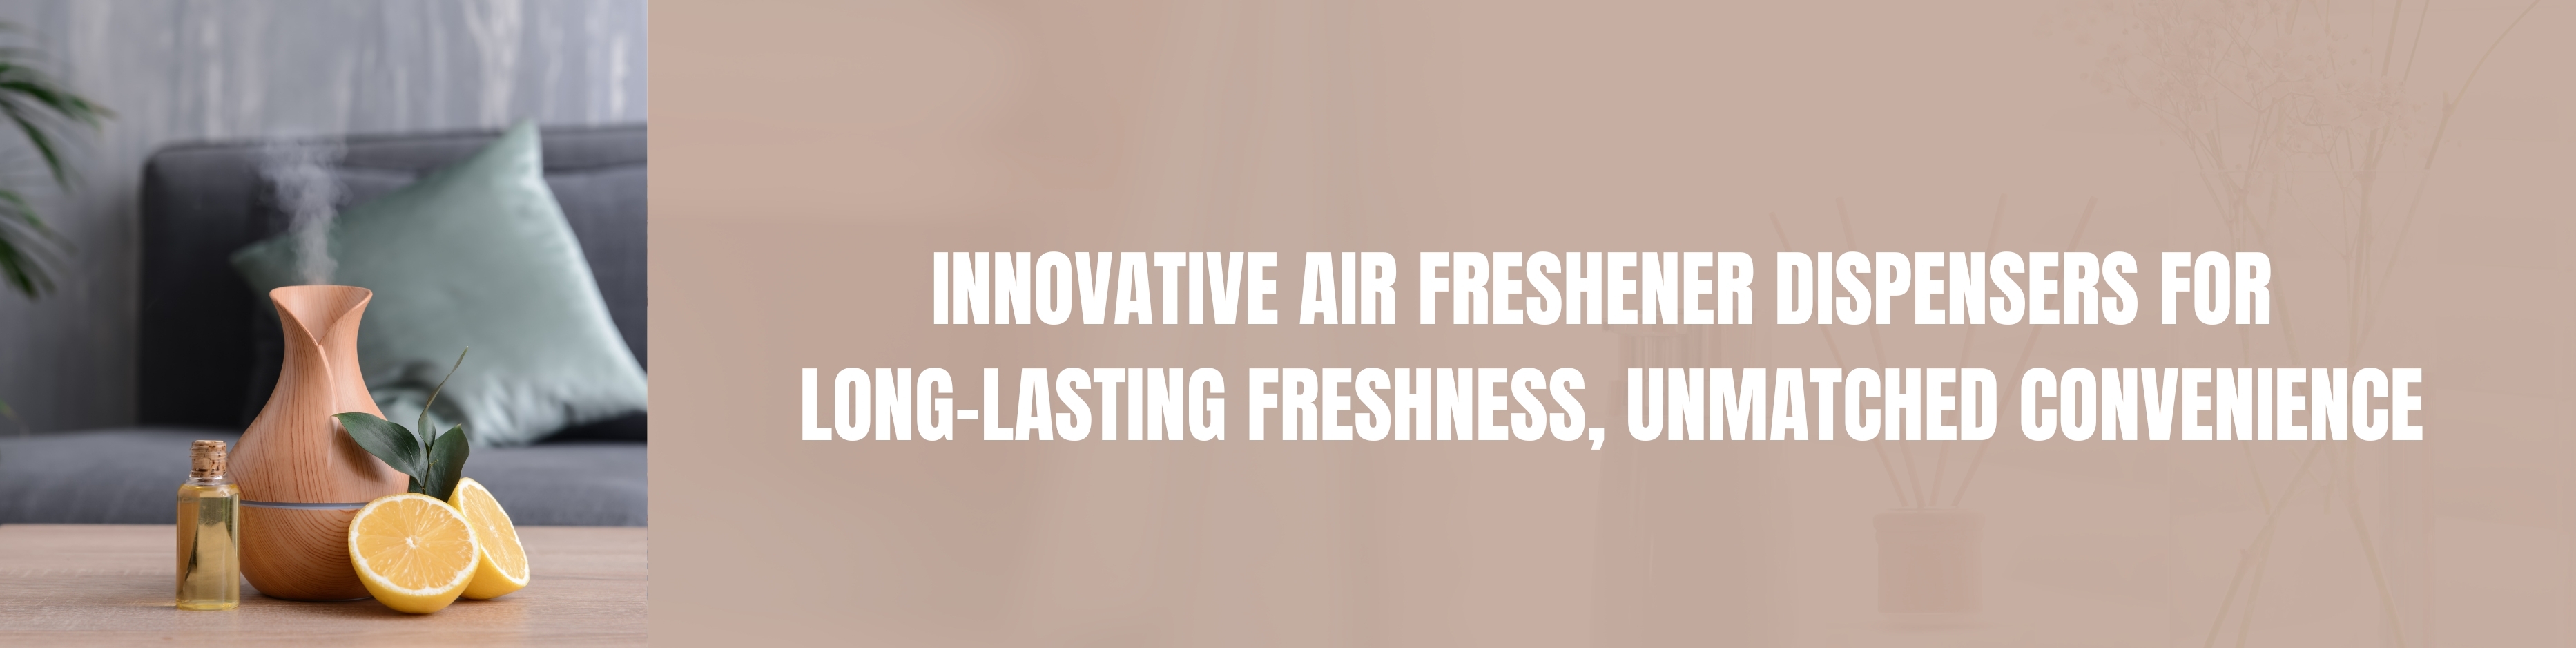 air-freshener-dispensers.jpg